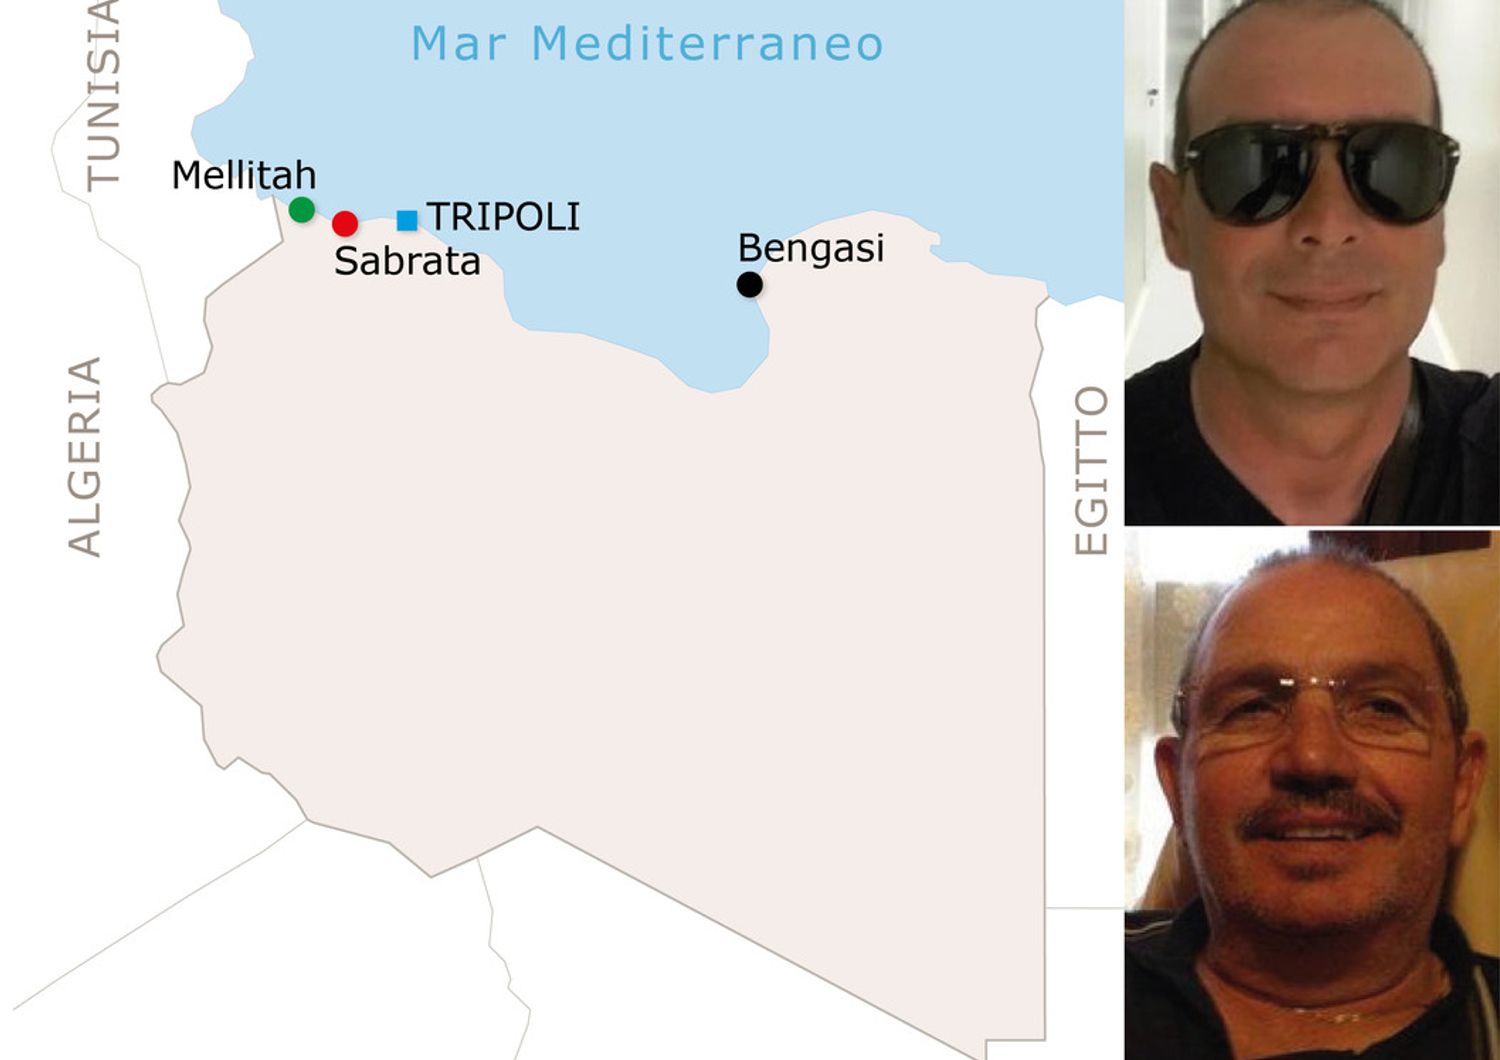 Fausto Piano e Salvatore Failla tecnici Bonatti rapiti e uccisi in Libia&nbsp;